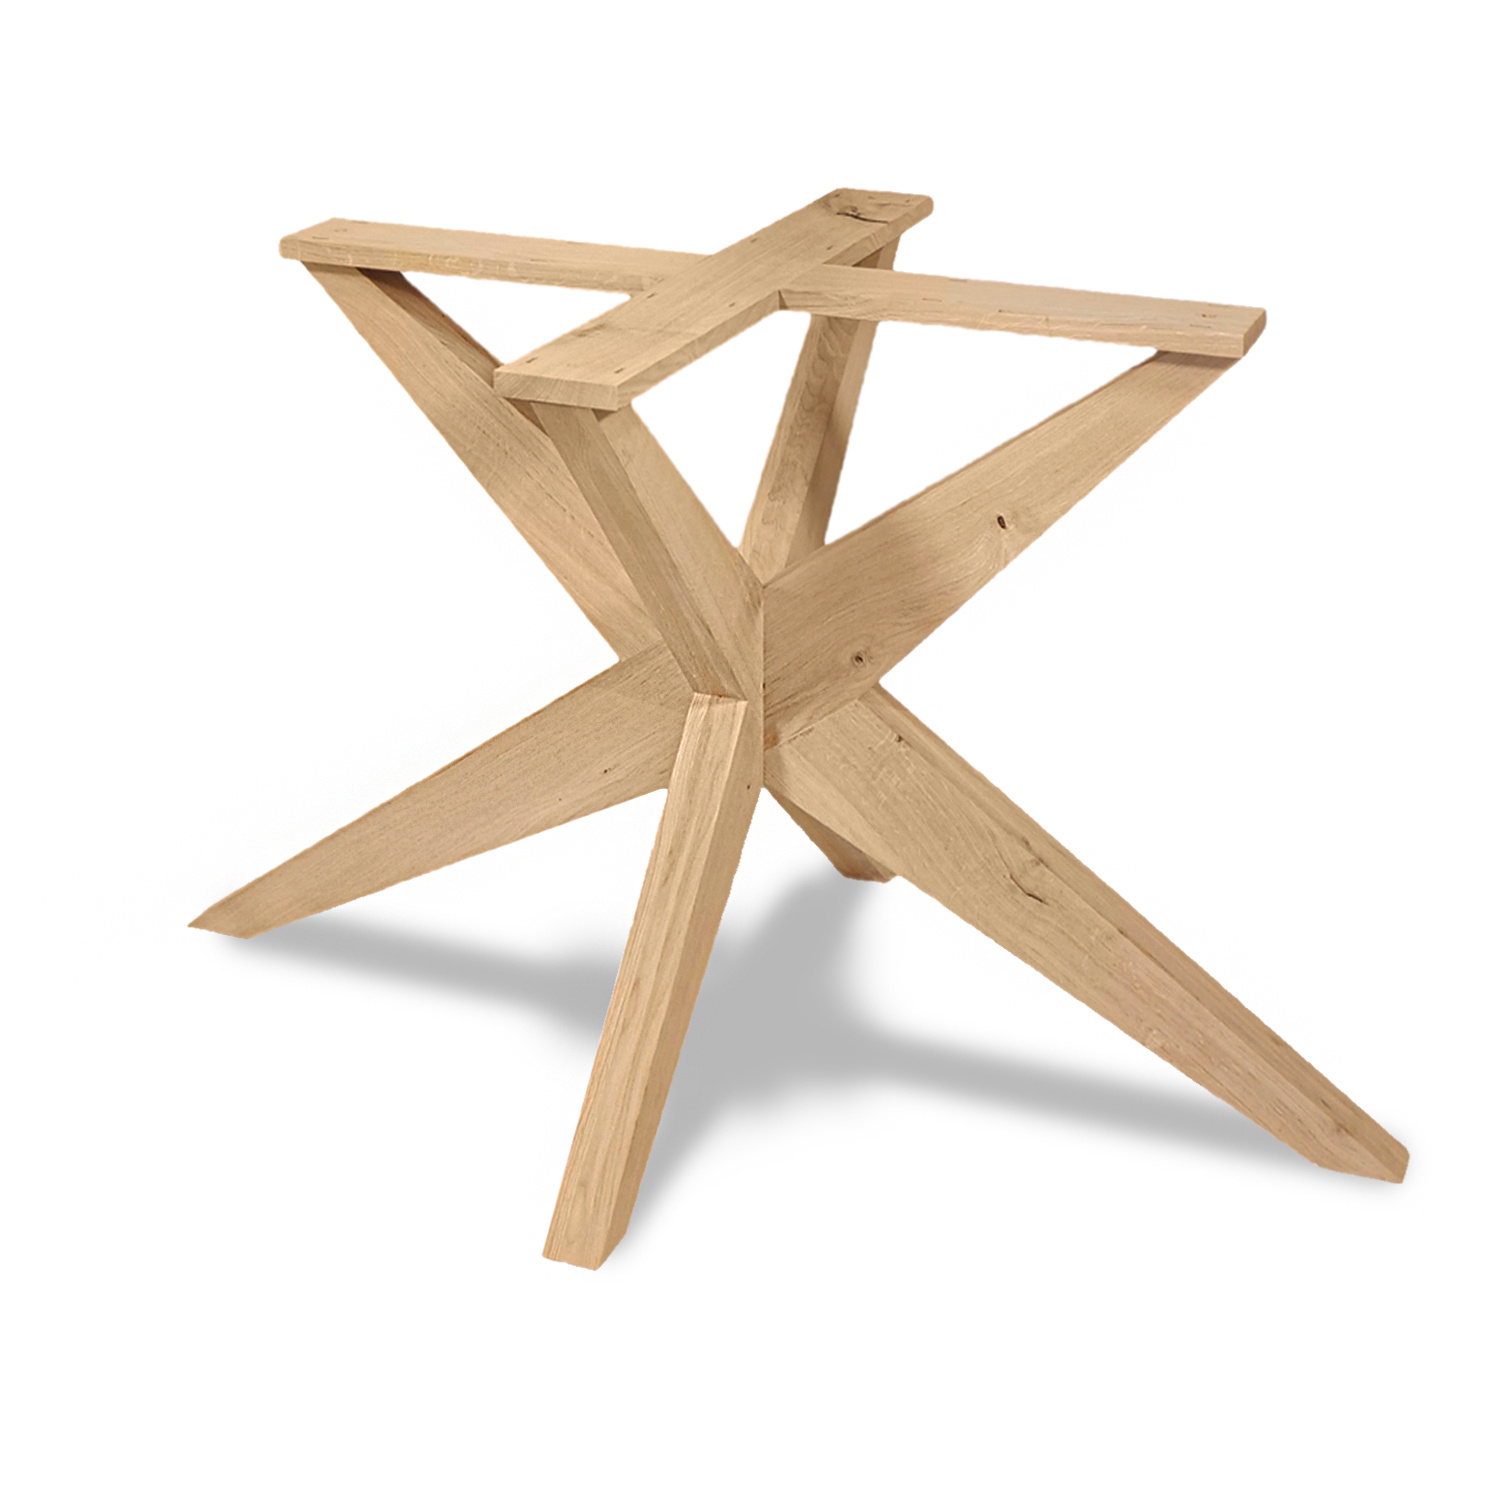  Tischgestell Eiche Spider- schräge Beine - 80x140 cm  - 72 cm hoch - Eichenholz Rustikal - massives Tischunterstell Rechteck, oval & gross rund (Mittelfuß) - Künstlich getrocknet HF 12%